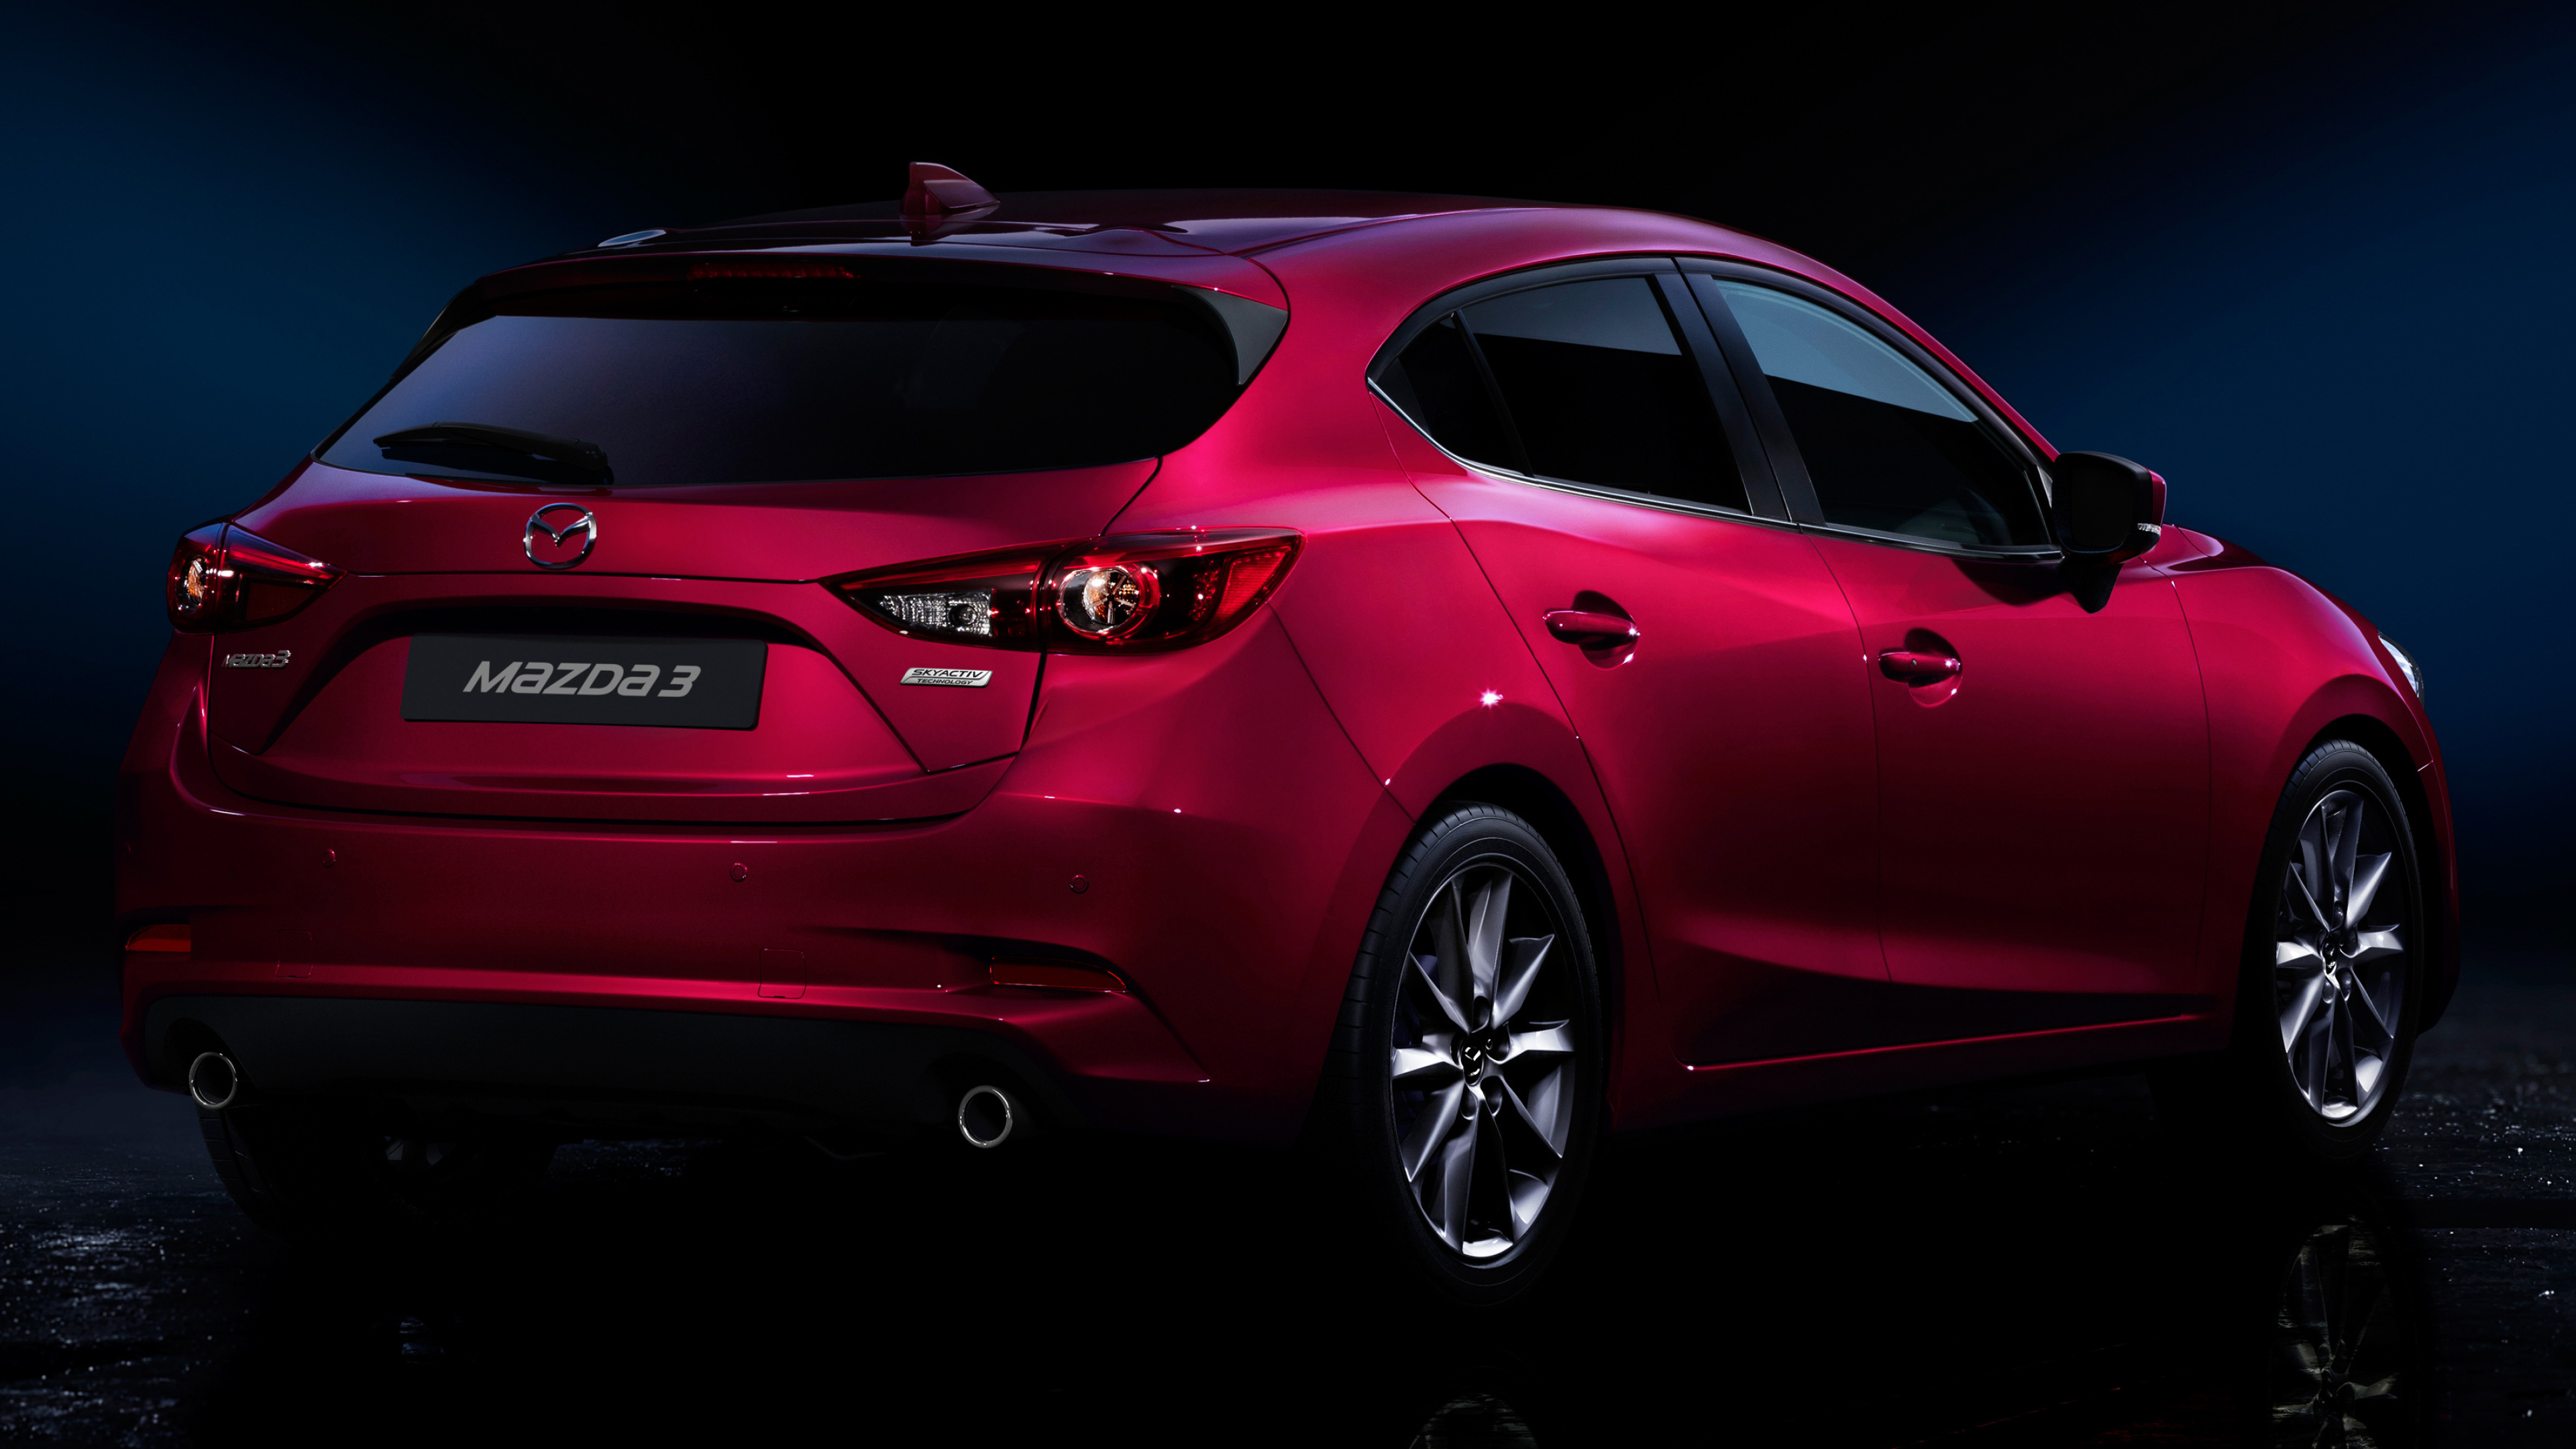 Mazda 3, Cars desktop wallpapers, Premium elegance, Exquisite design, 3840x2160 4K Desktop